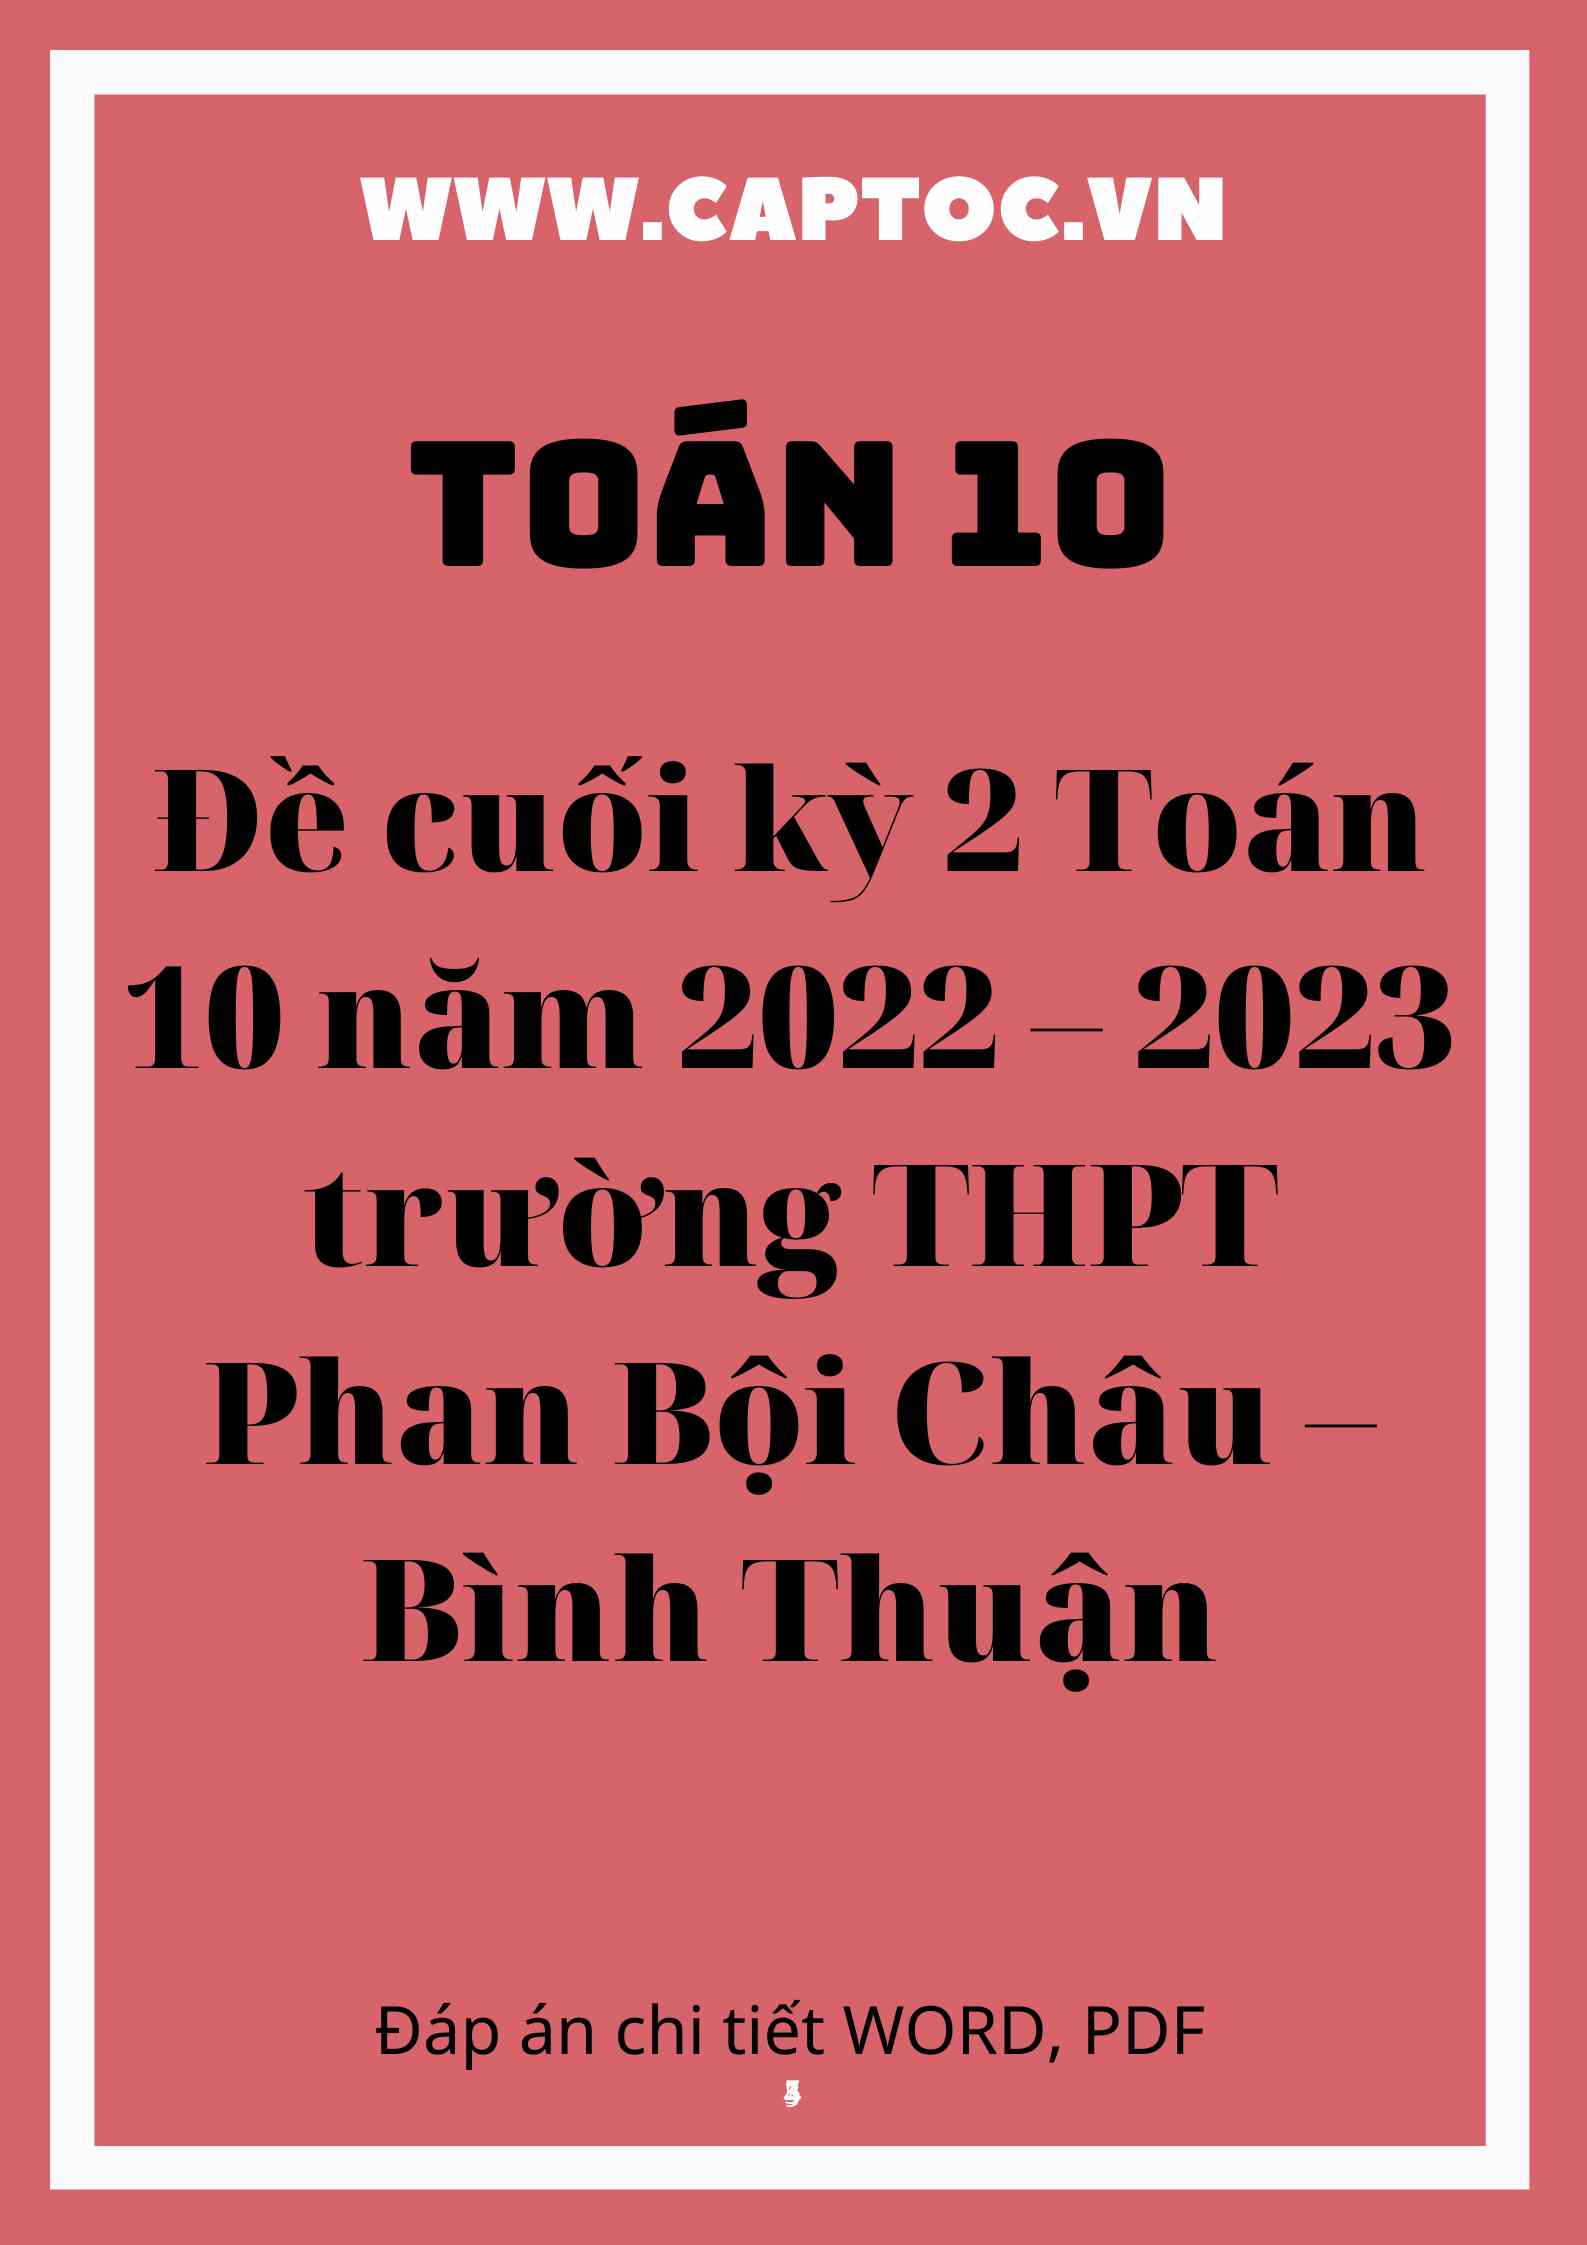 Đề cuối kỳ 2 Toán 10 năm 2022 – 2023 trường THPT Phan Bội Châu – Bình Thuận